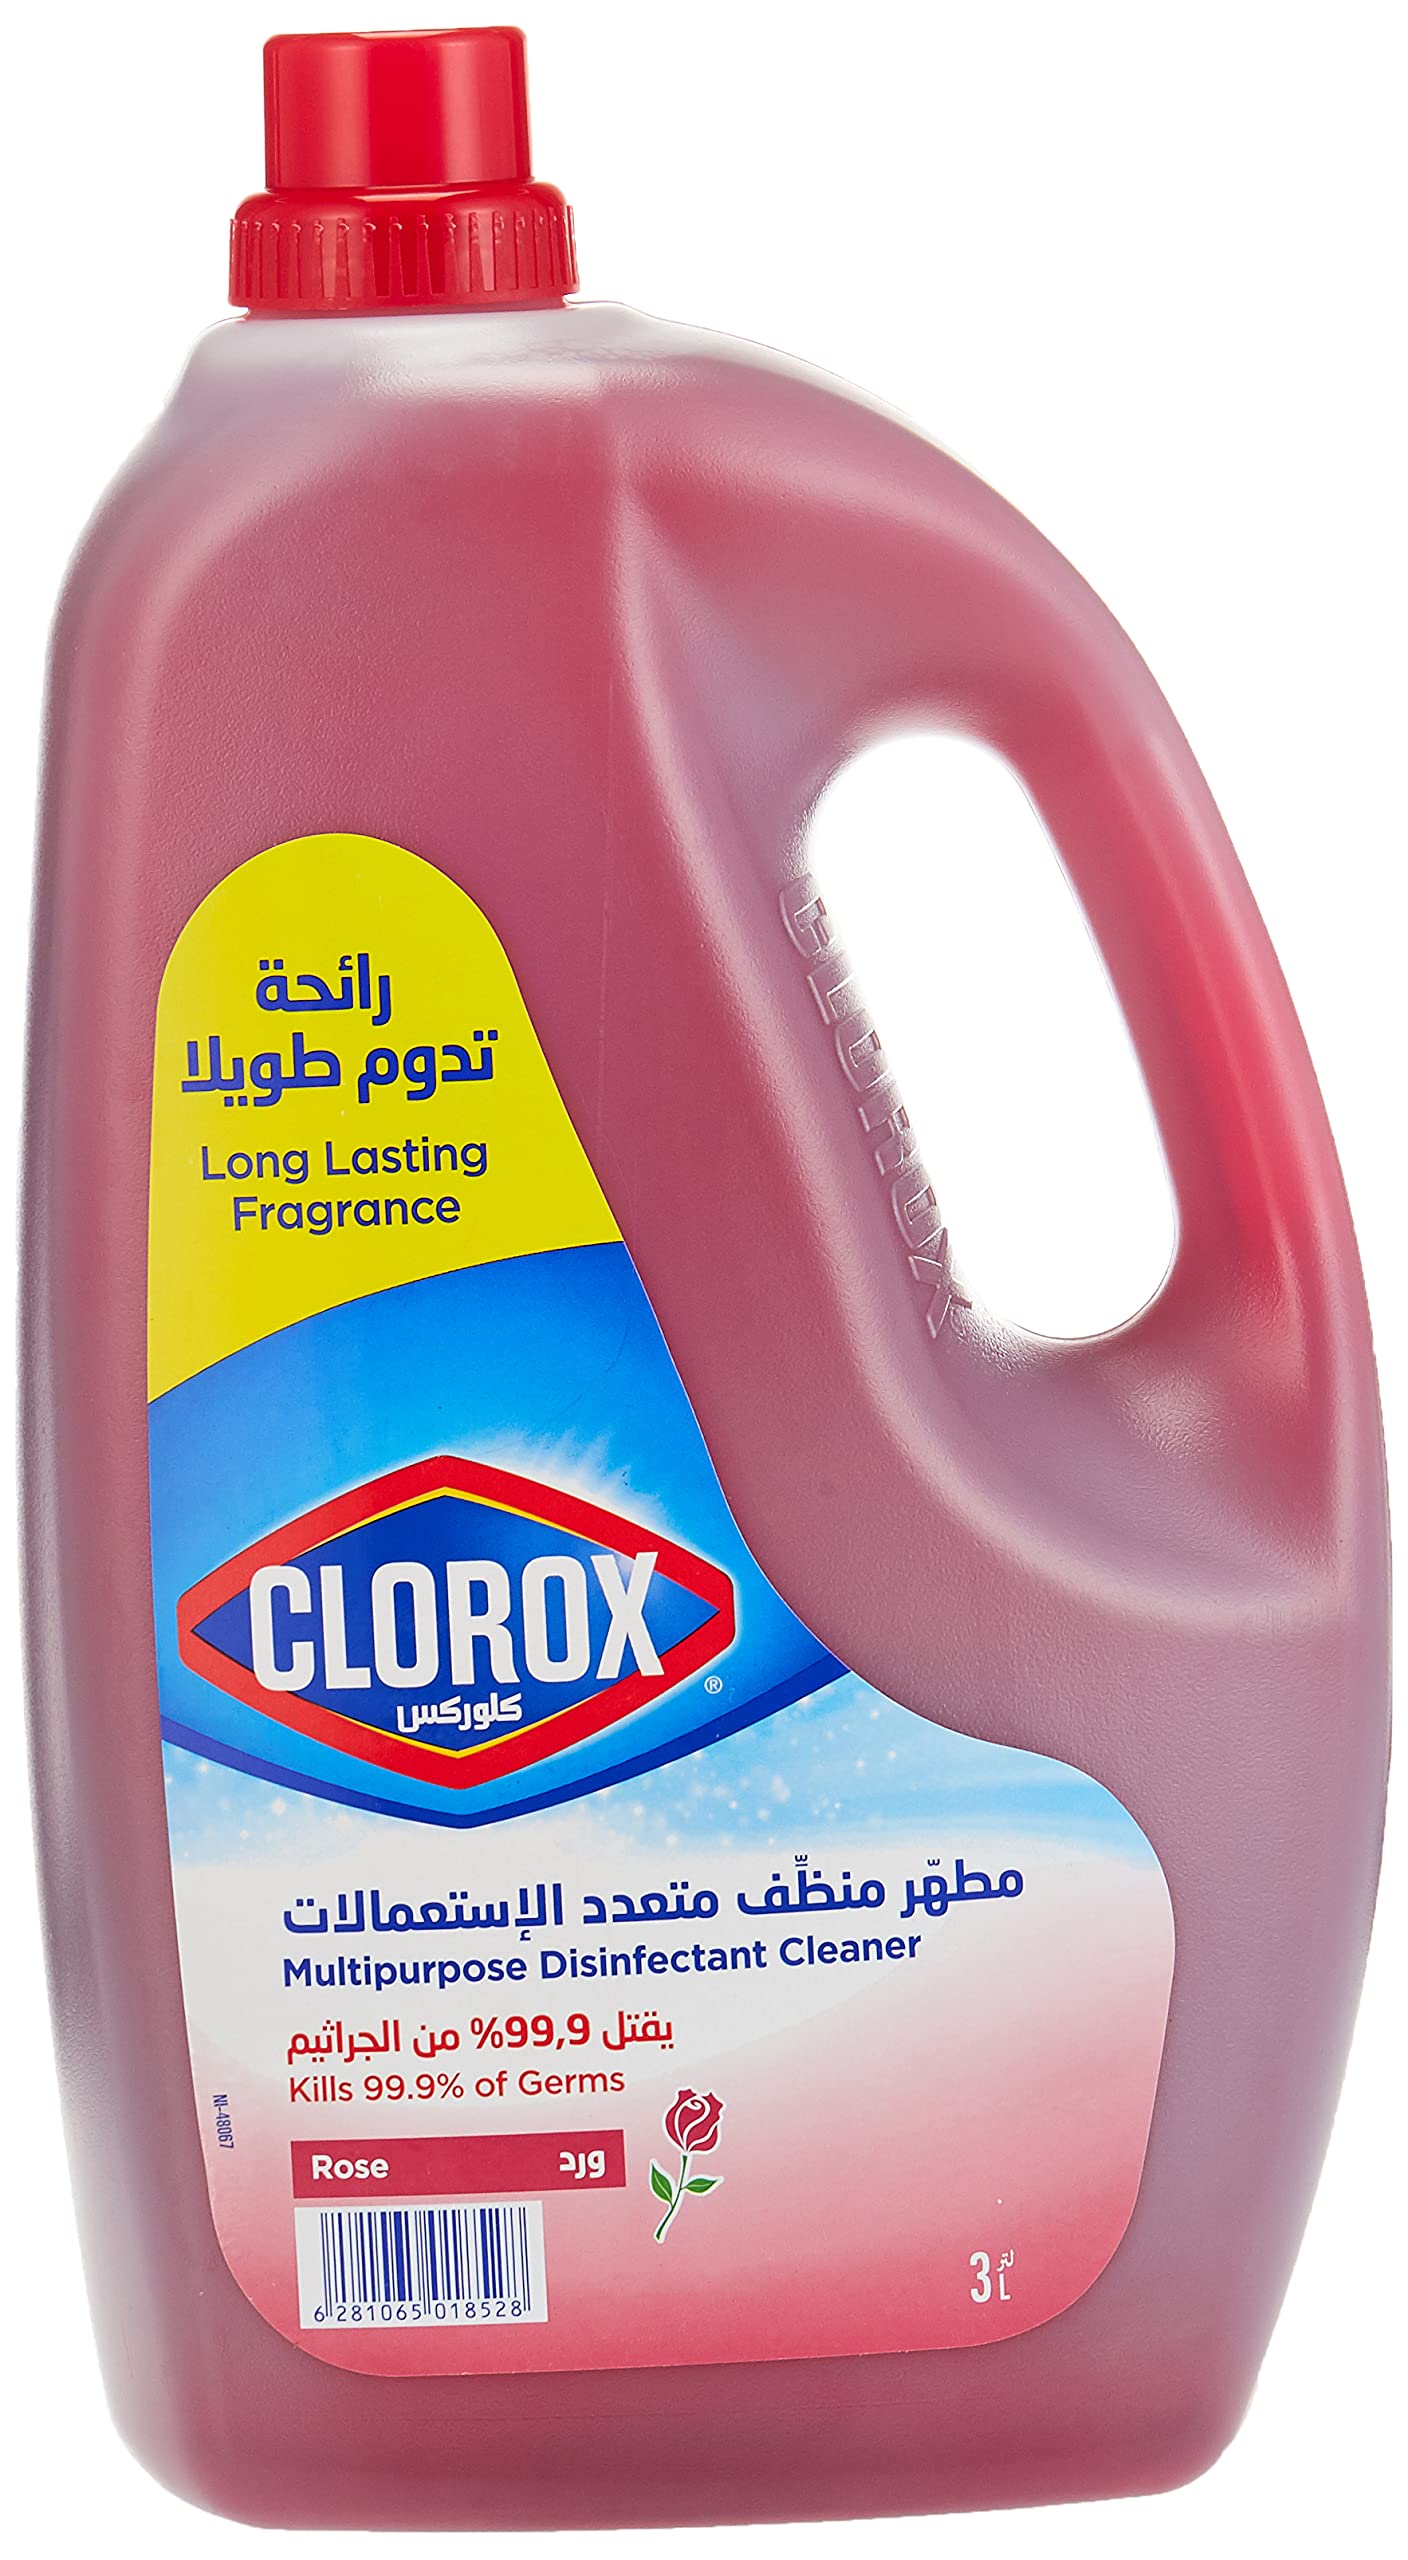 Clorox Multipurpose Disinfectant Cleaner Rose 3L 